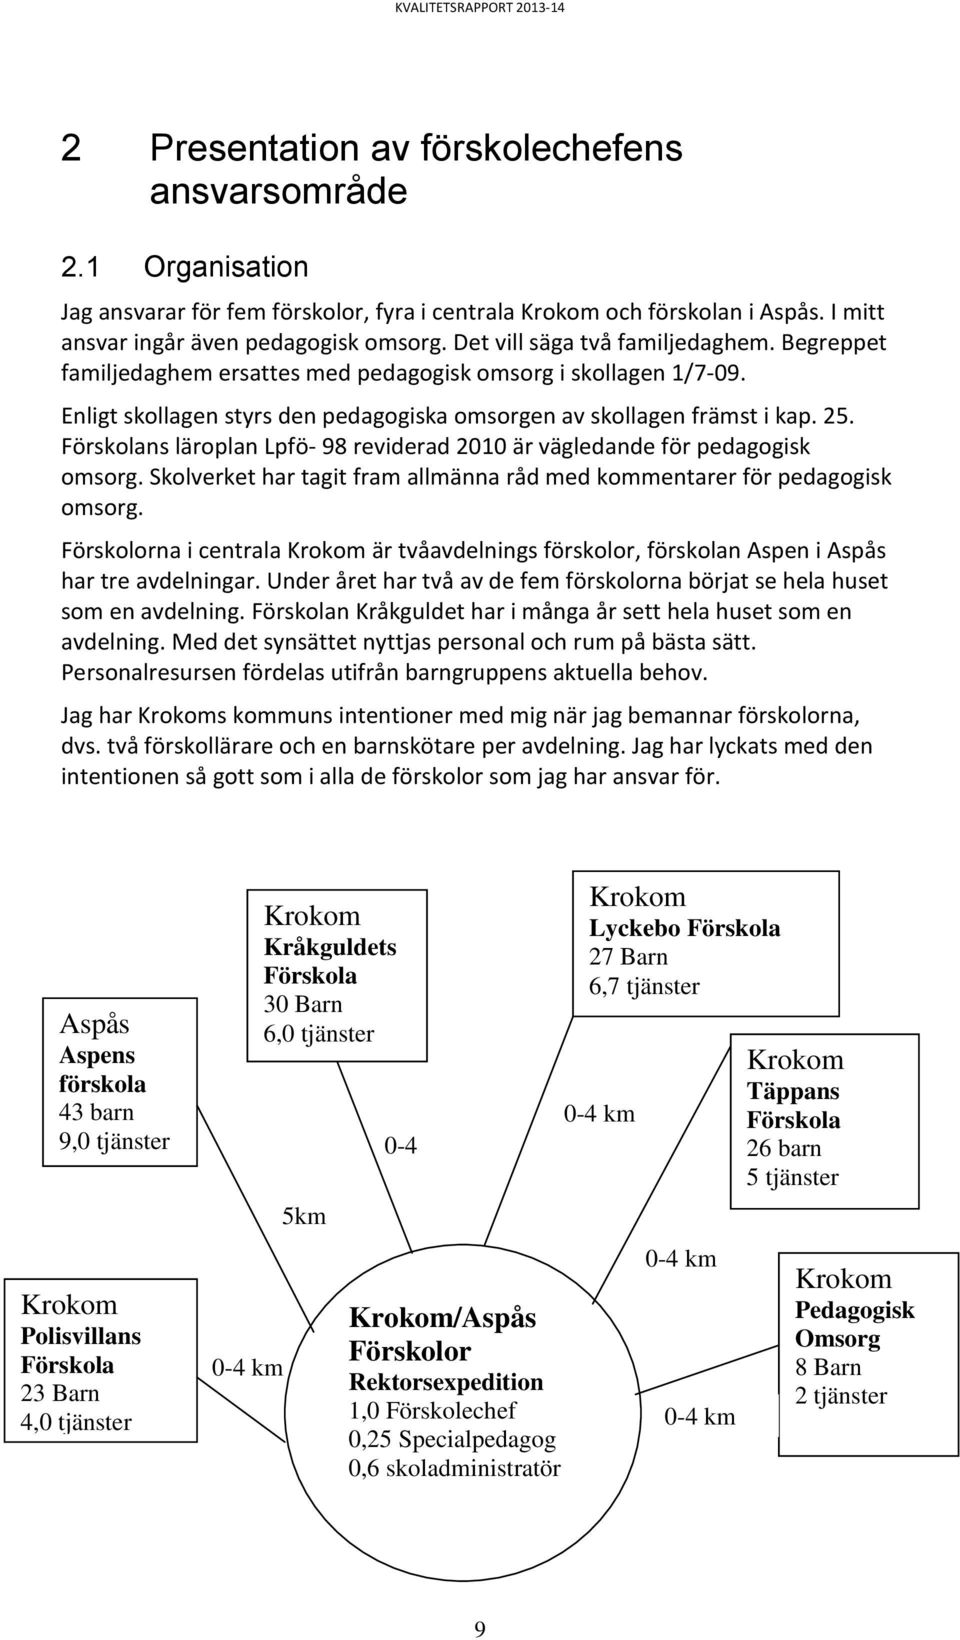 Förskolans läroplan Lpfö- 98 reviderad 2010 är vägledande för pedagogisk omsorg. Skolverket har tagit fram allmänna råd med kommentarer för pedagogisk omsorg.